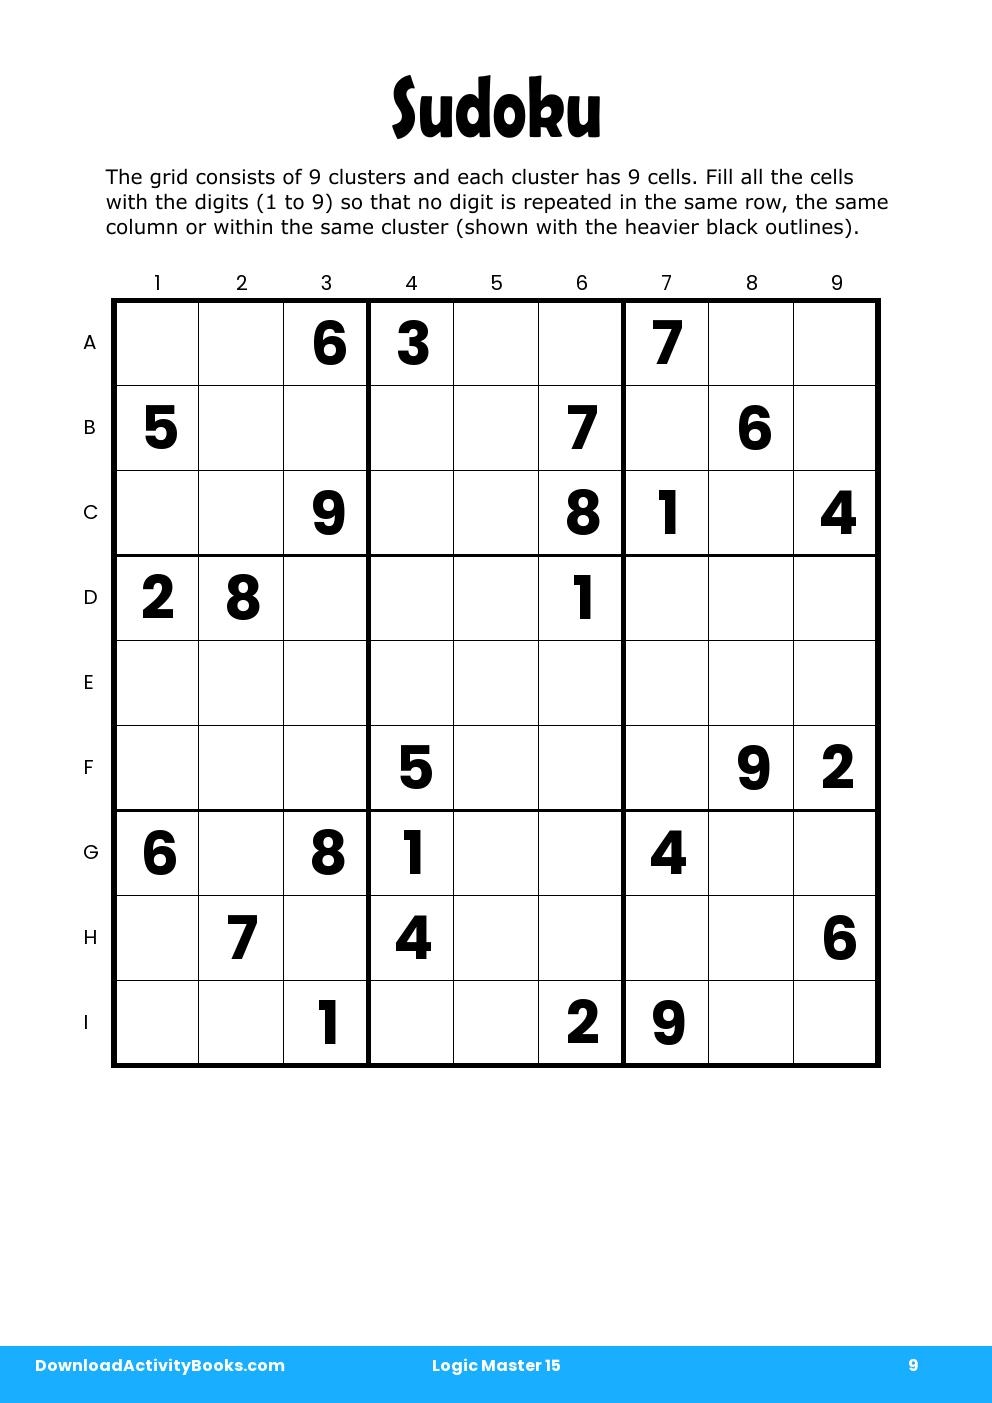 Sudoku in Logic Master 15